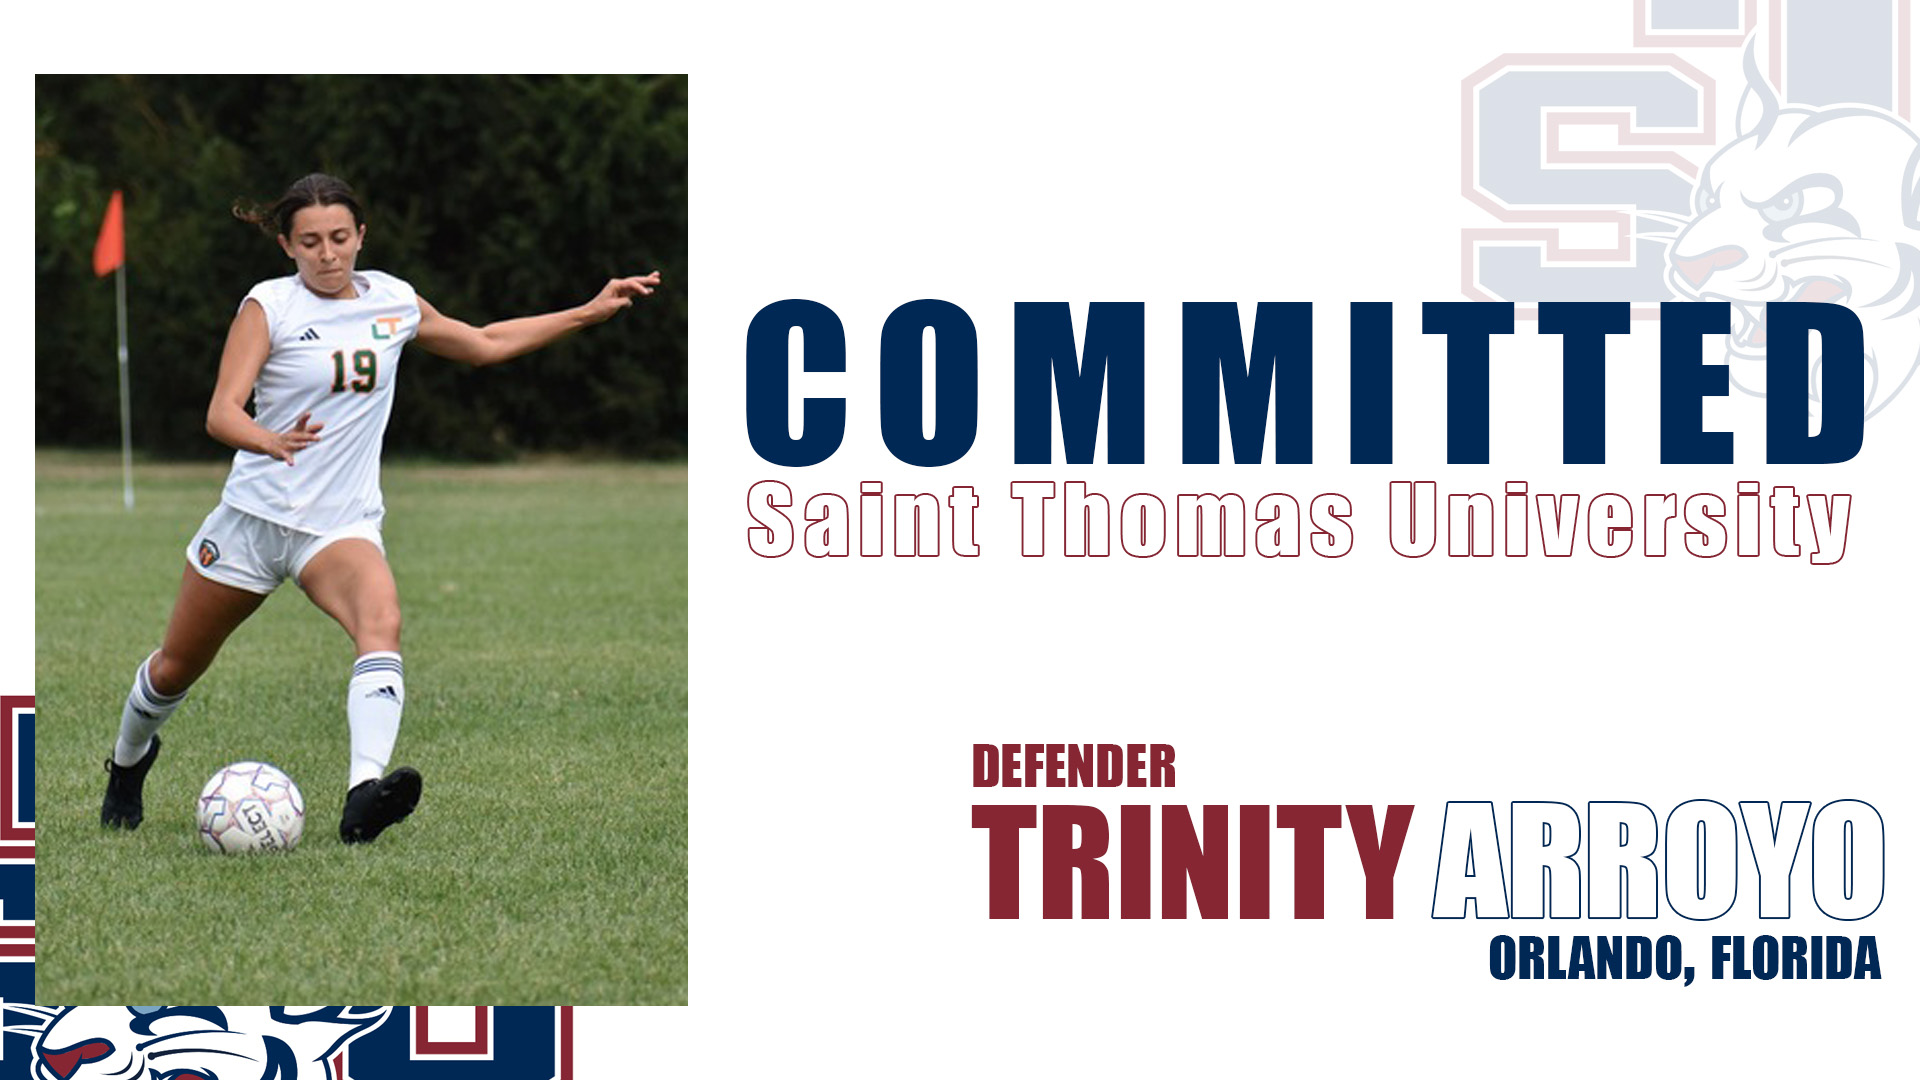 Trinity Arroyo Commits to Play Soccer at Saint Thomas University